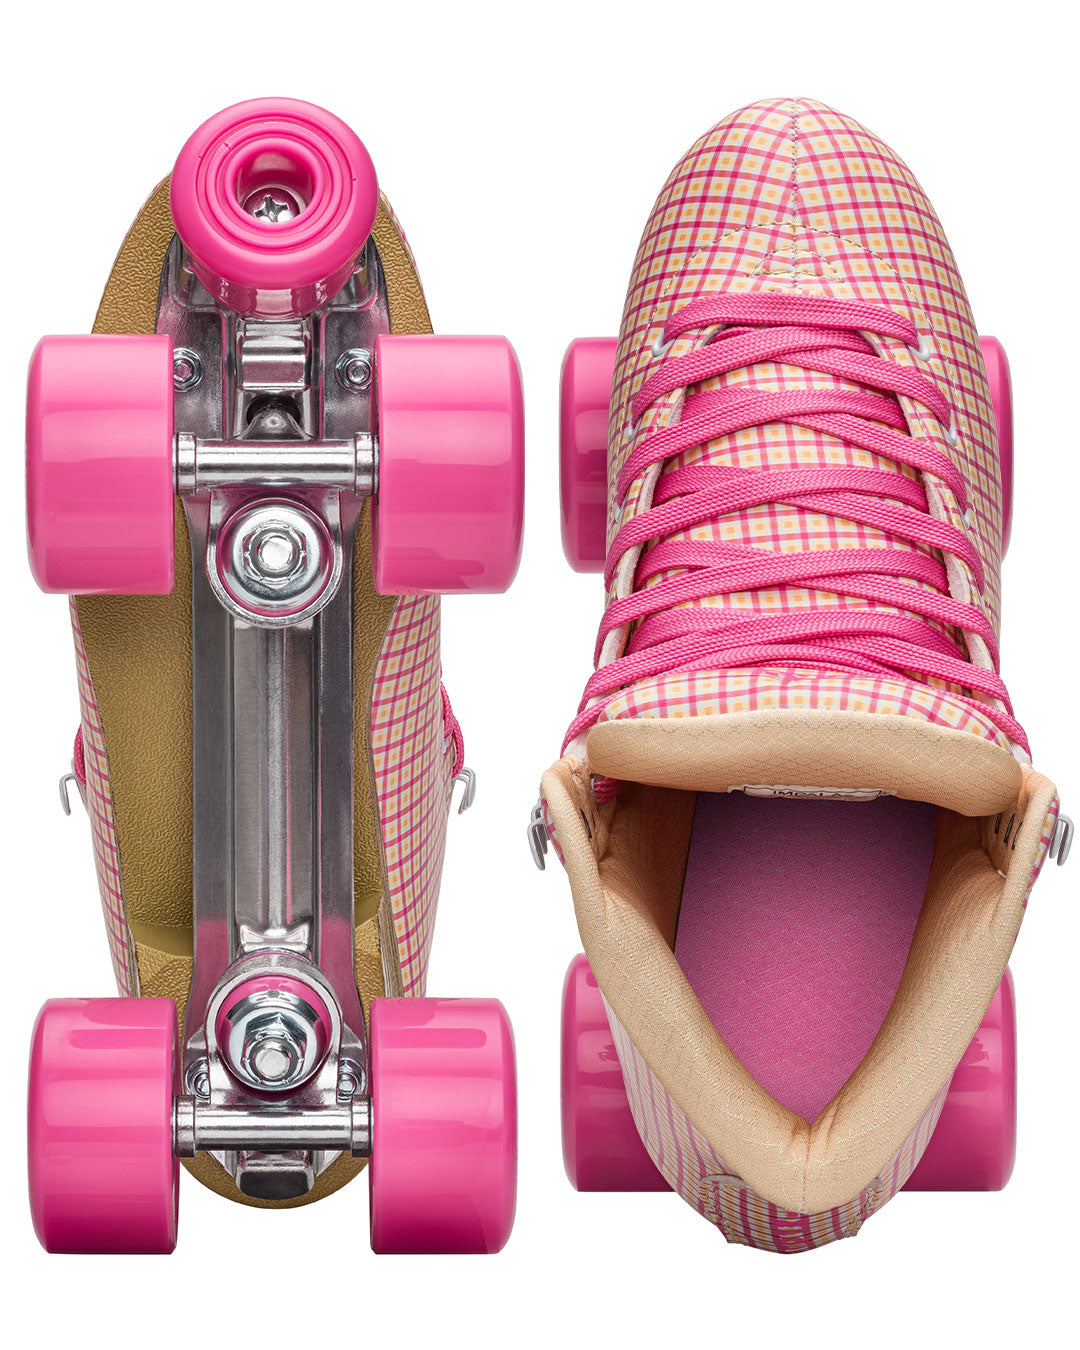 Impala Roller Skates - Pink Tartan - Momma Trucker Skates